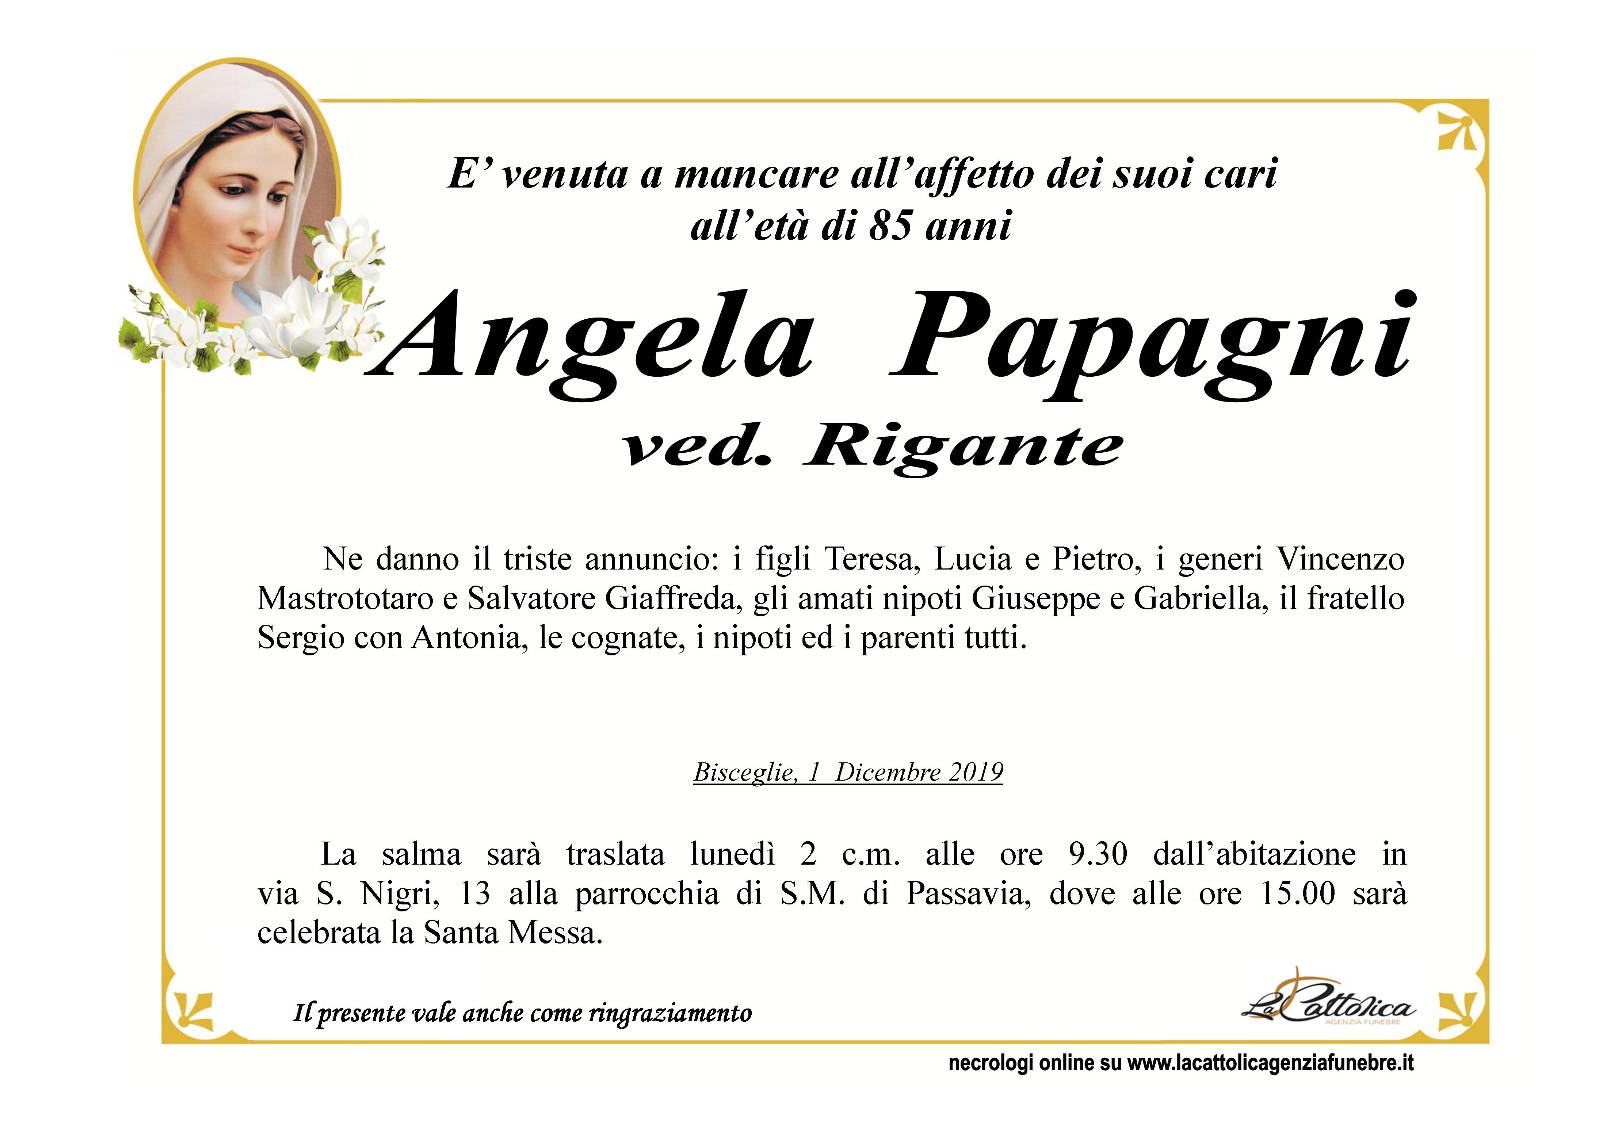 Angela Pagagni